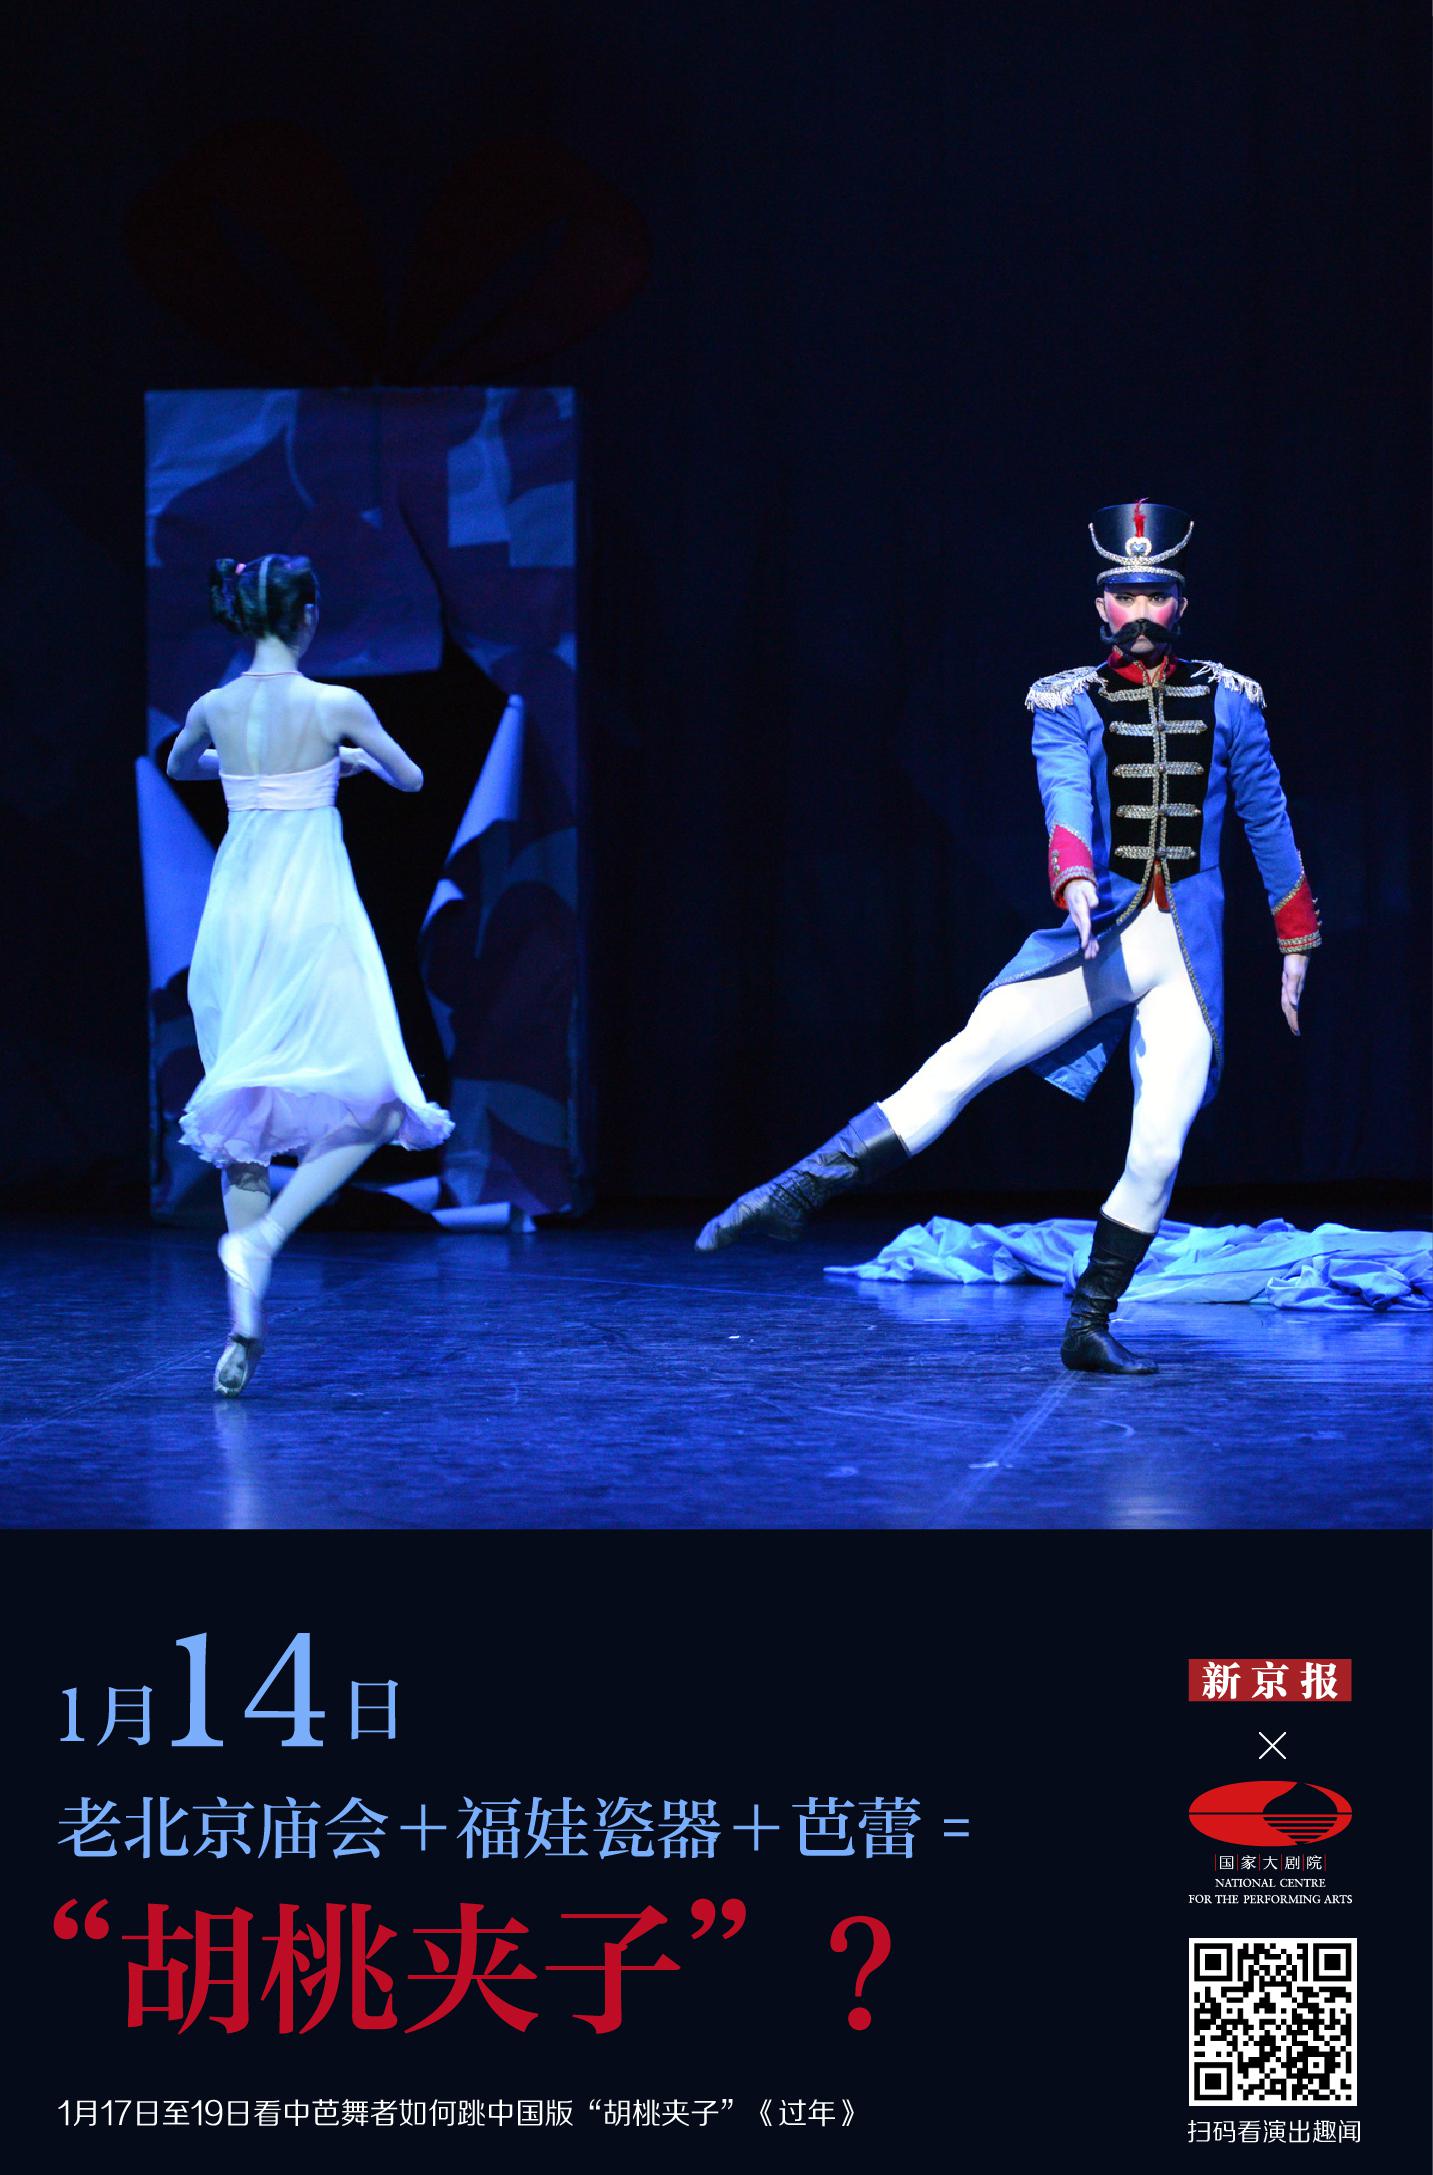 中央芭蕾舞团带来舞剧《过年》,一出用芭蕾演绎的中文版《胡桃夹子》